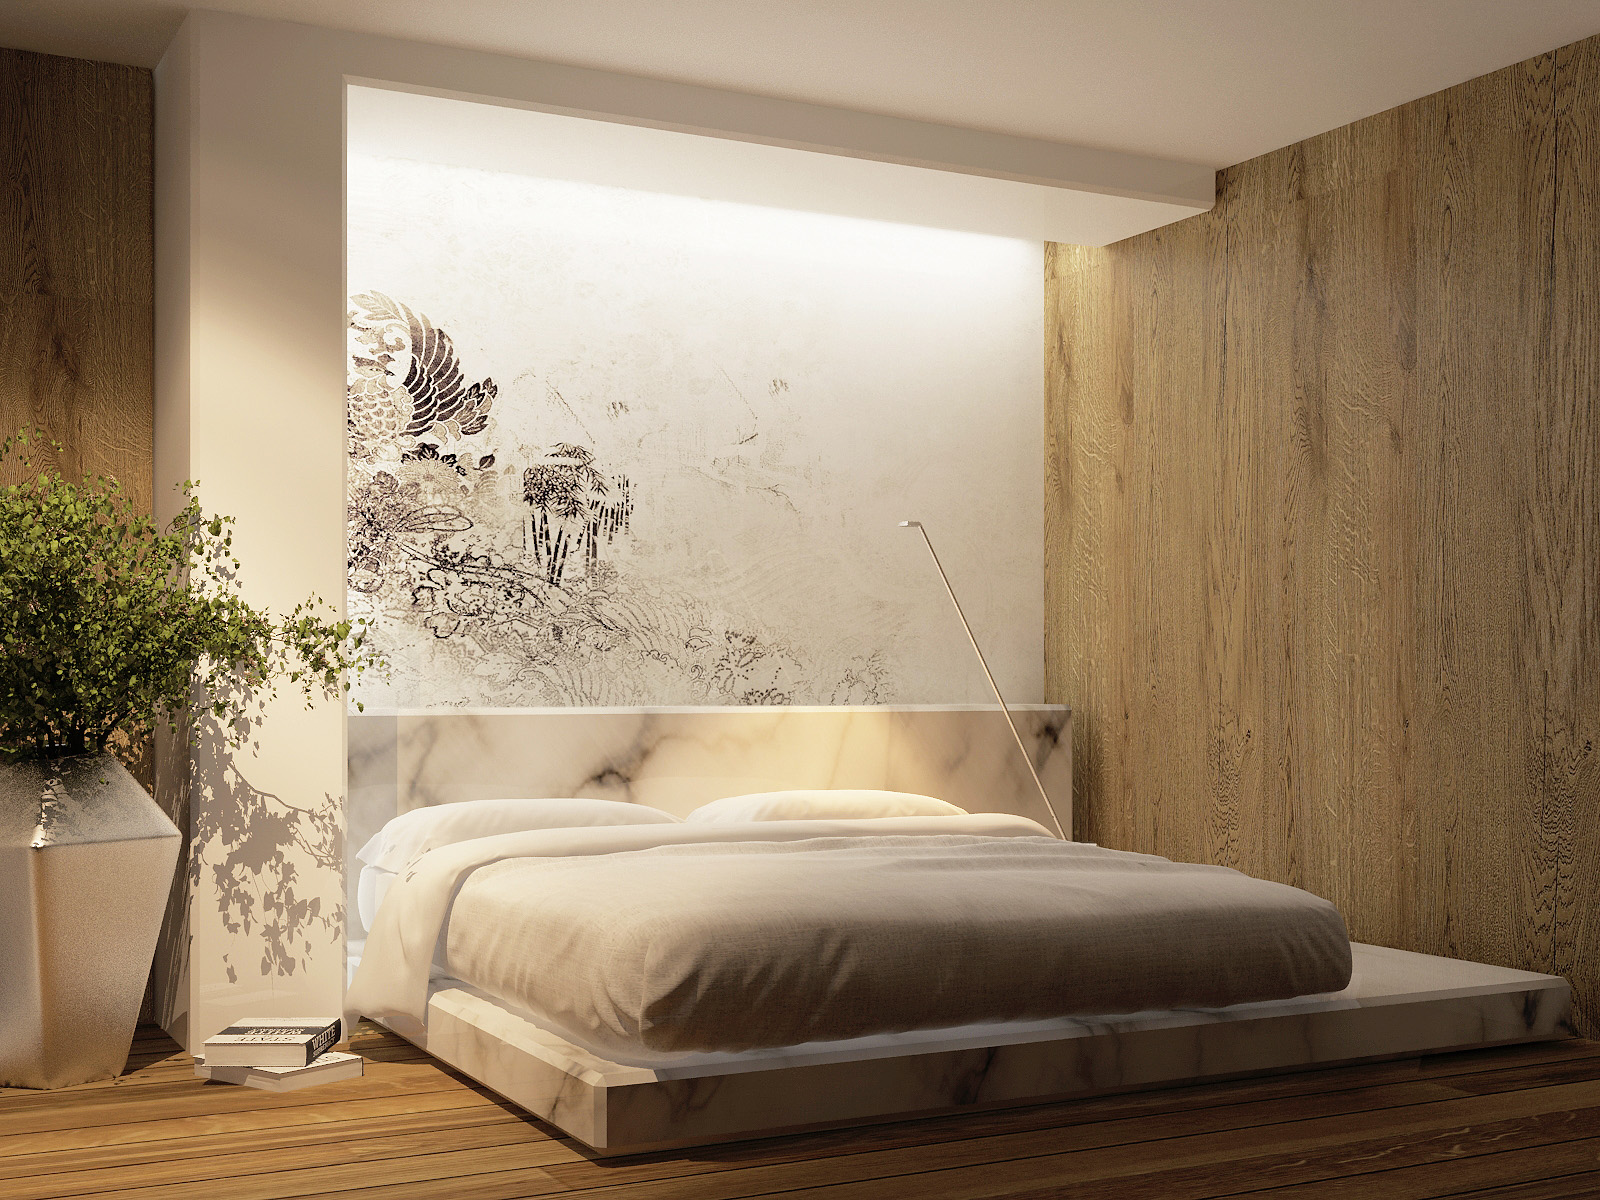 Marble Platform Bed Interior Design Ideas, Marble Bed Frame